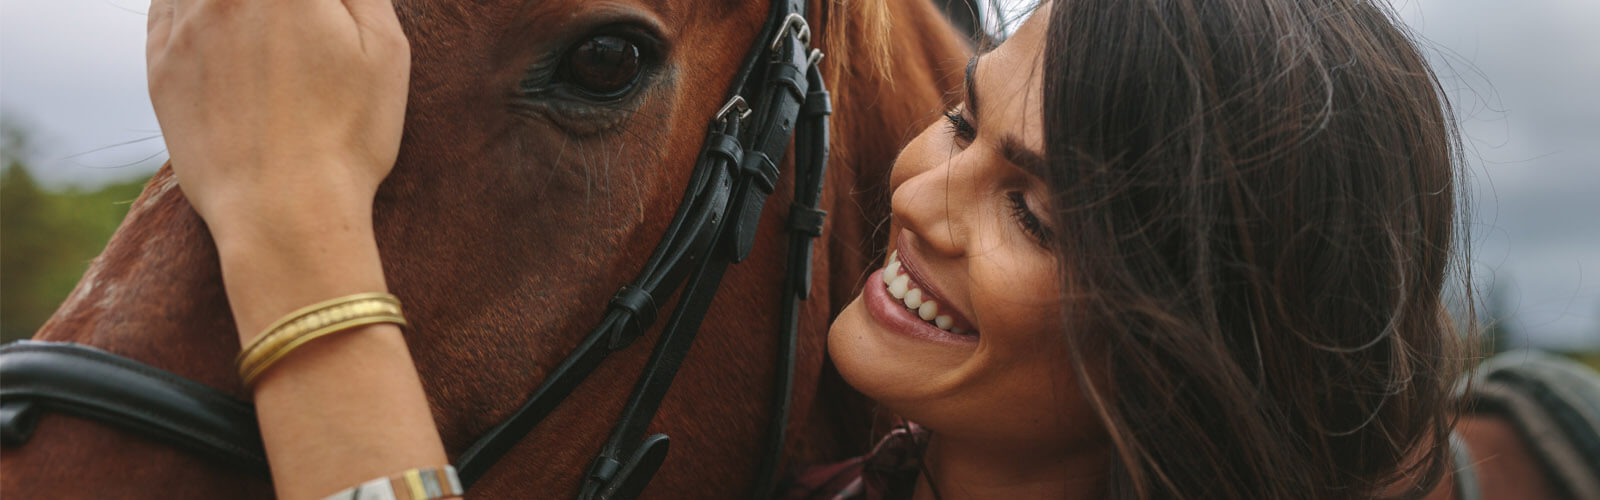 Milovníci koní a kontaktné šošovky